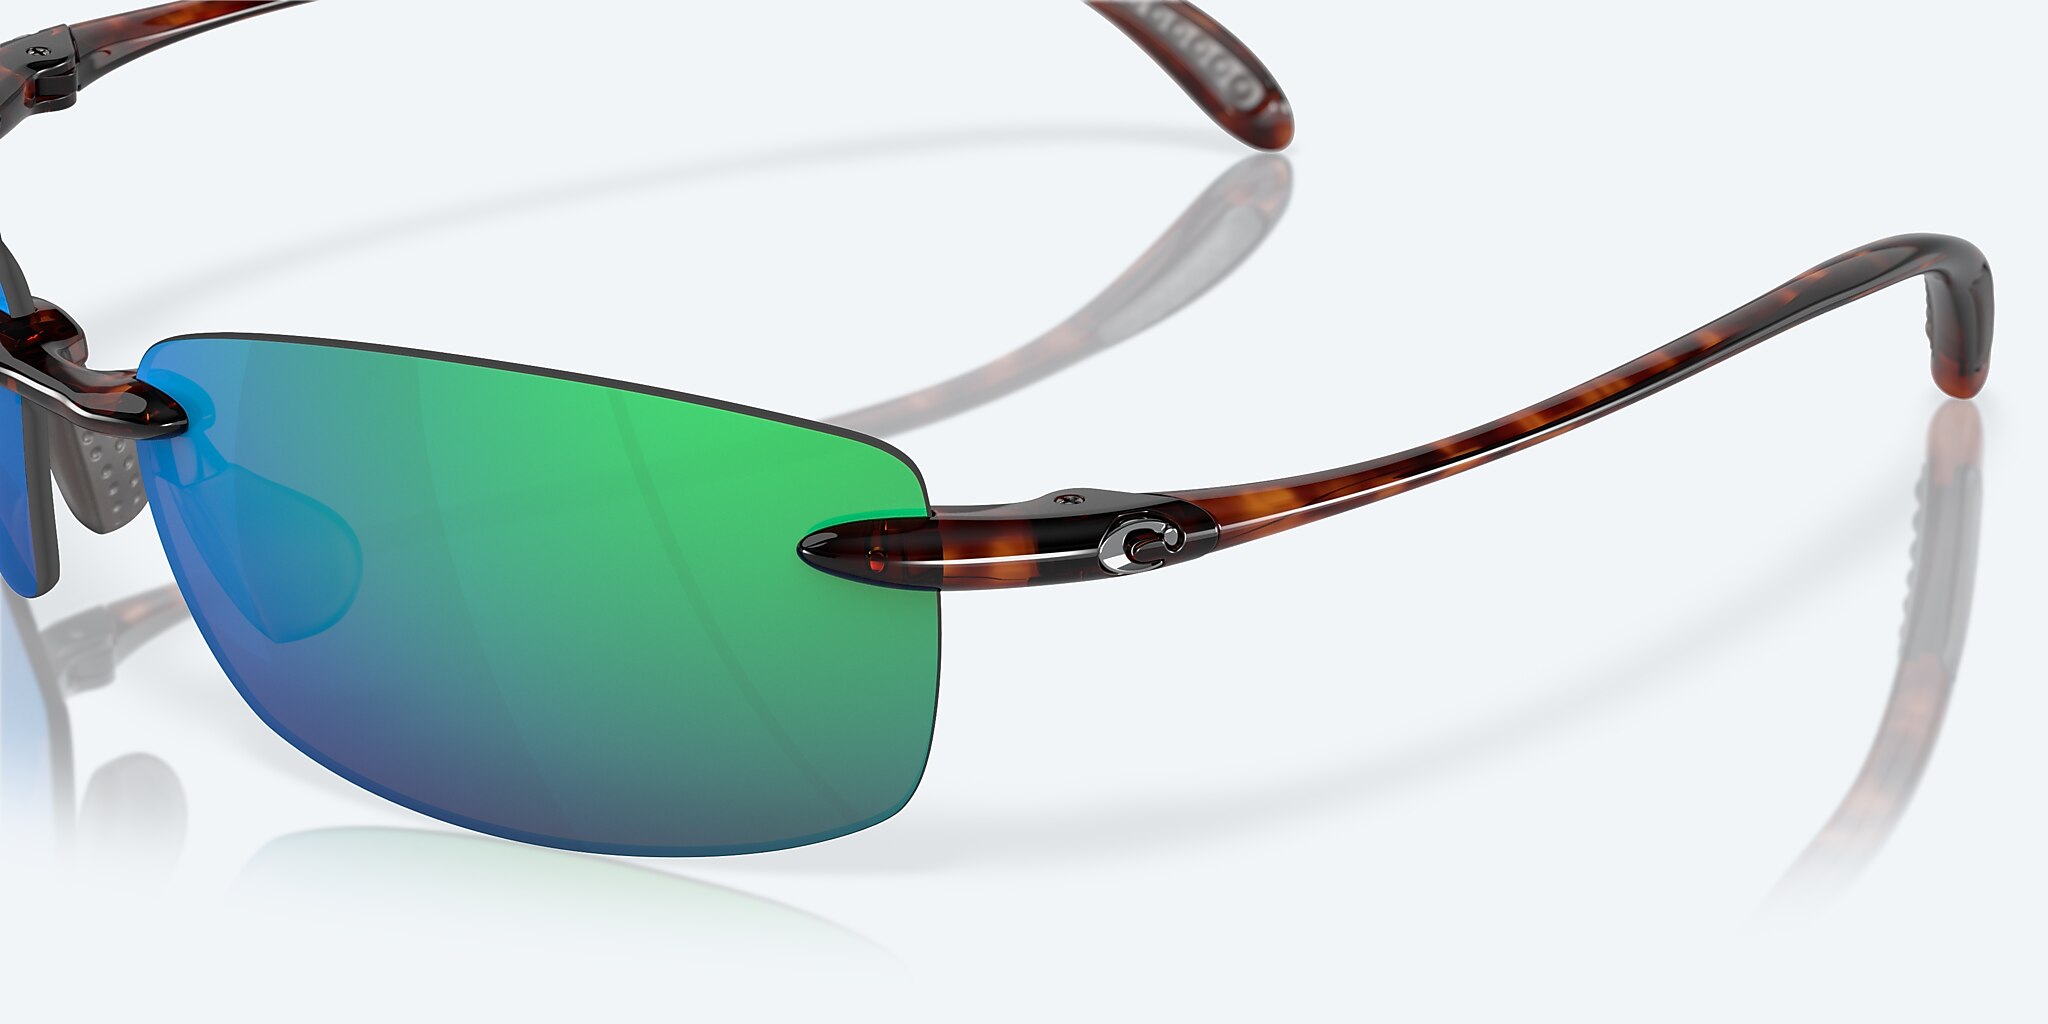 Costa Del Mar Men's Ballast Polarized Sunglasses-Green MIRROR/TORTOISE